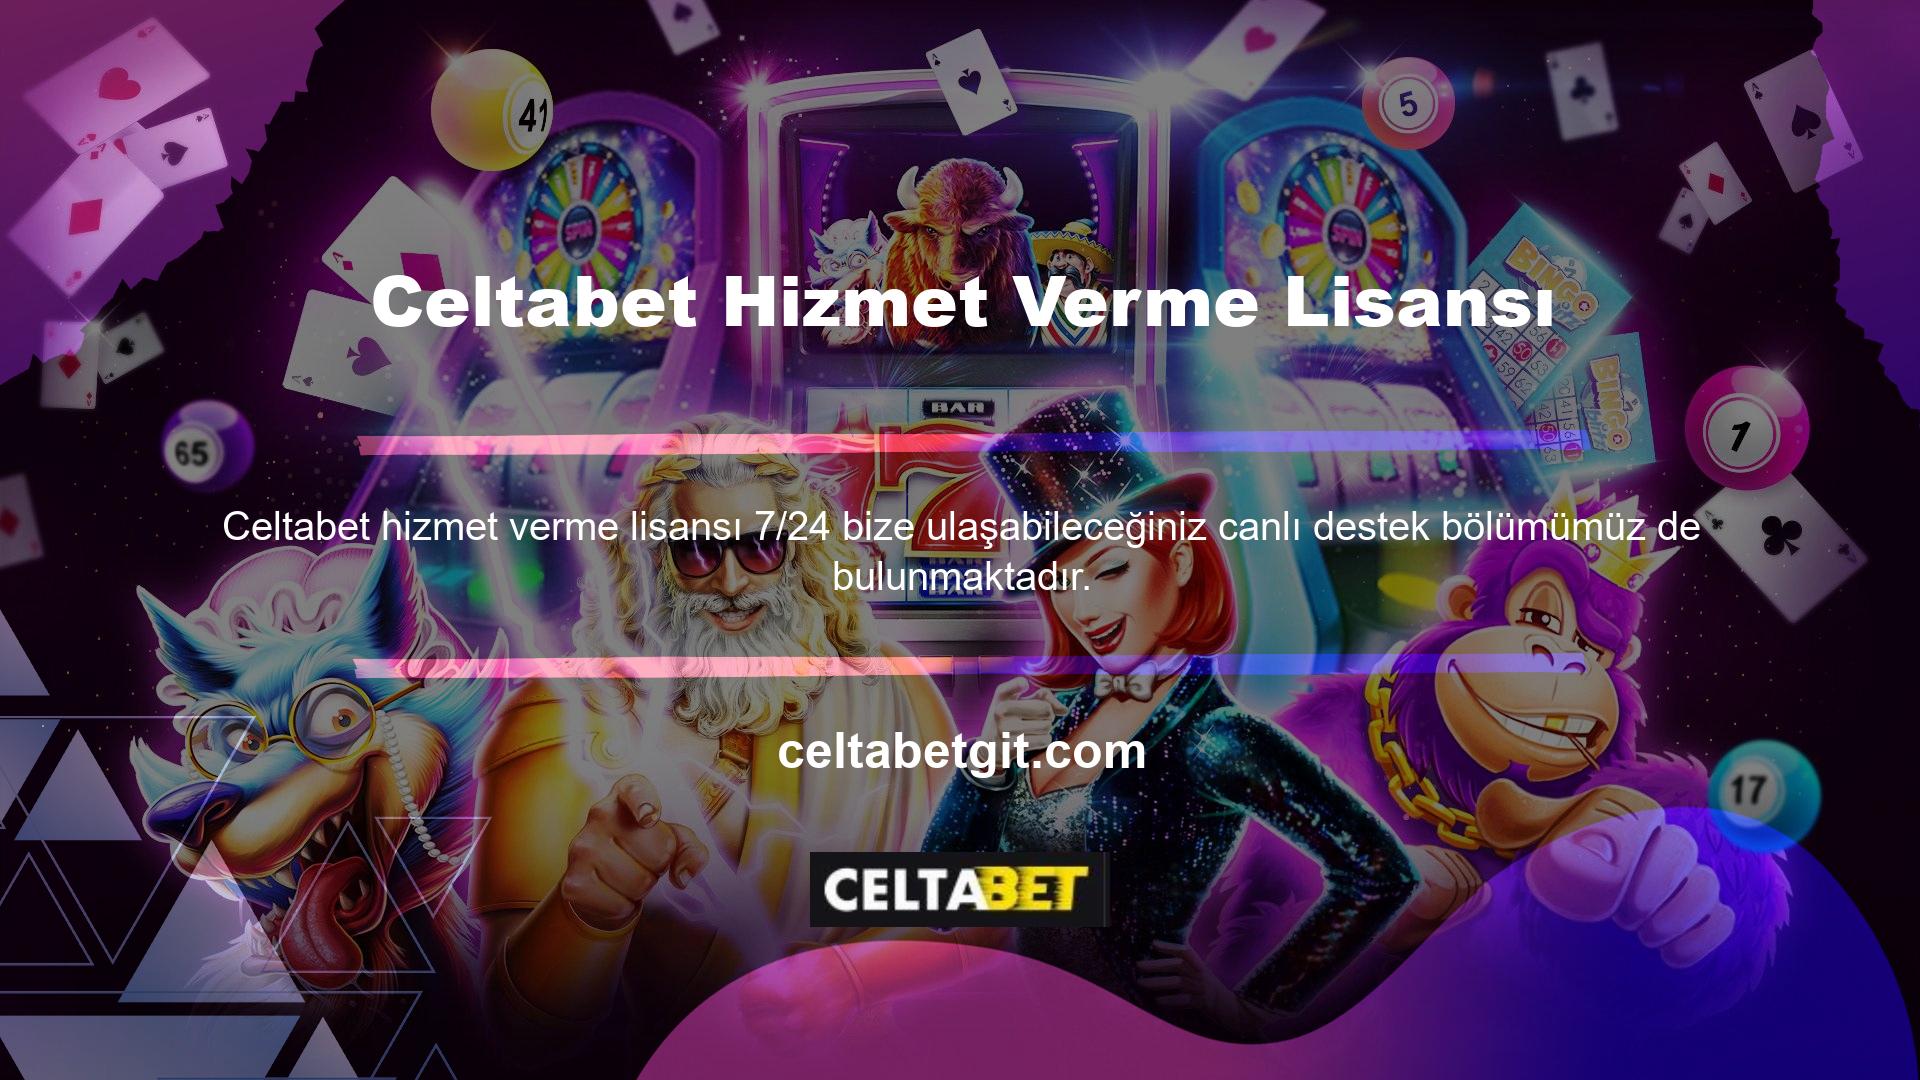 Celtabet hizmet sağlama lisansı ile Türkçe dil desteği, bahis sitesinin web sitesini sorunsuz bir şekilde kullanmanızı sağlar